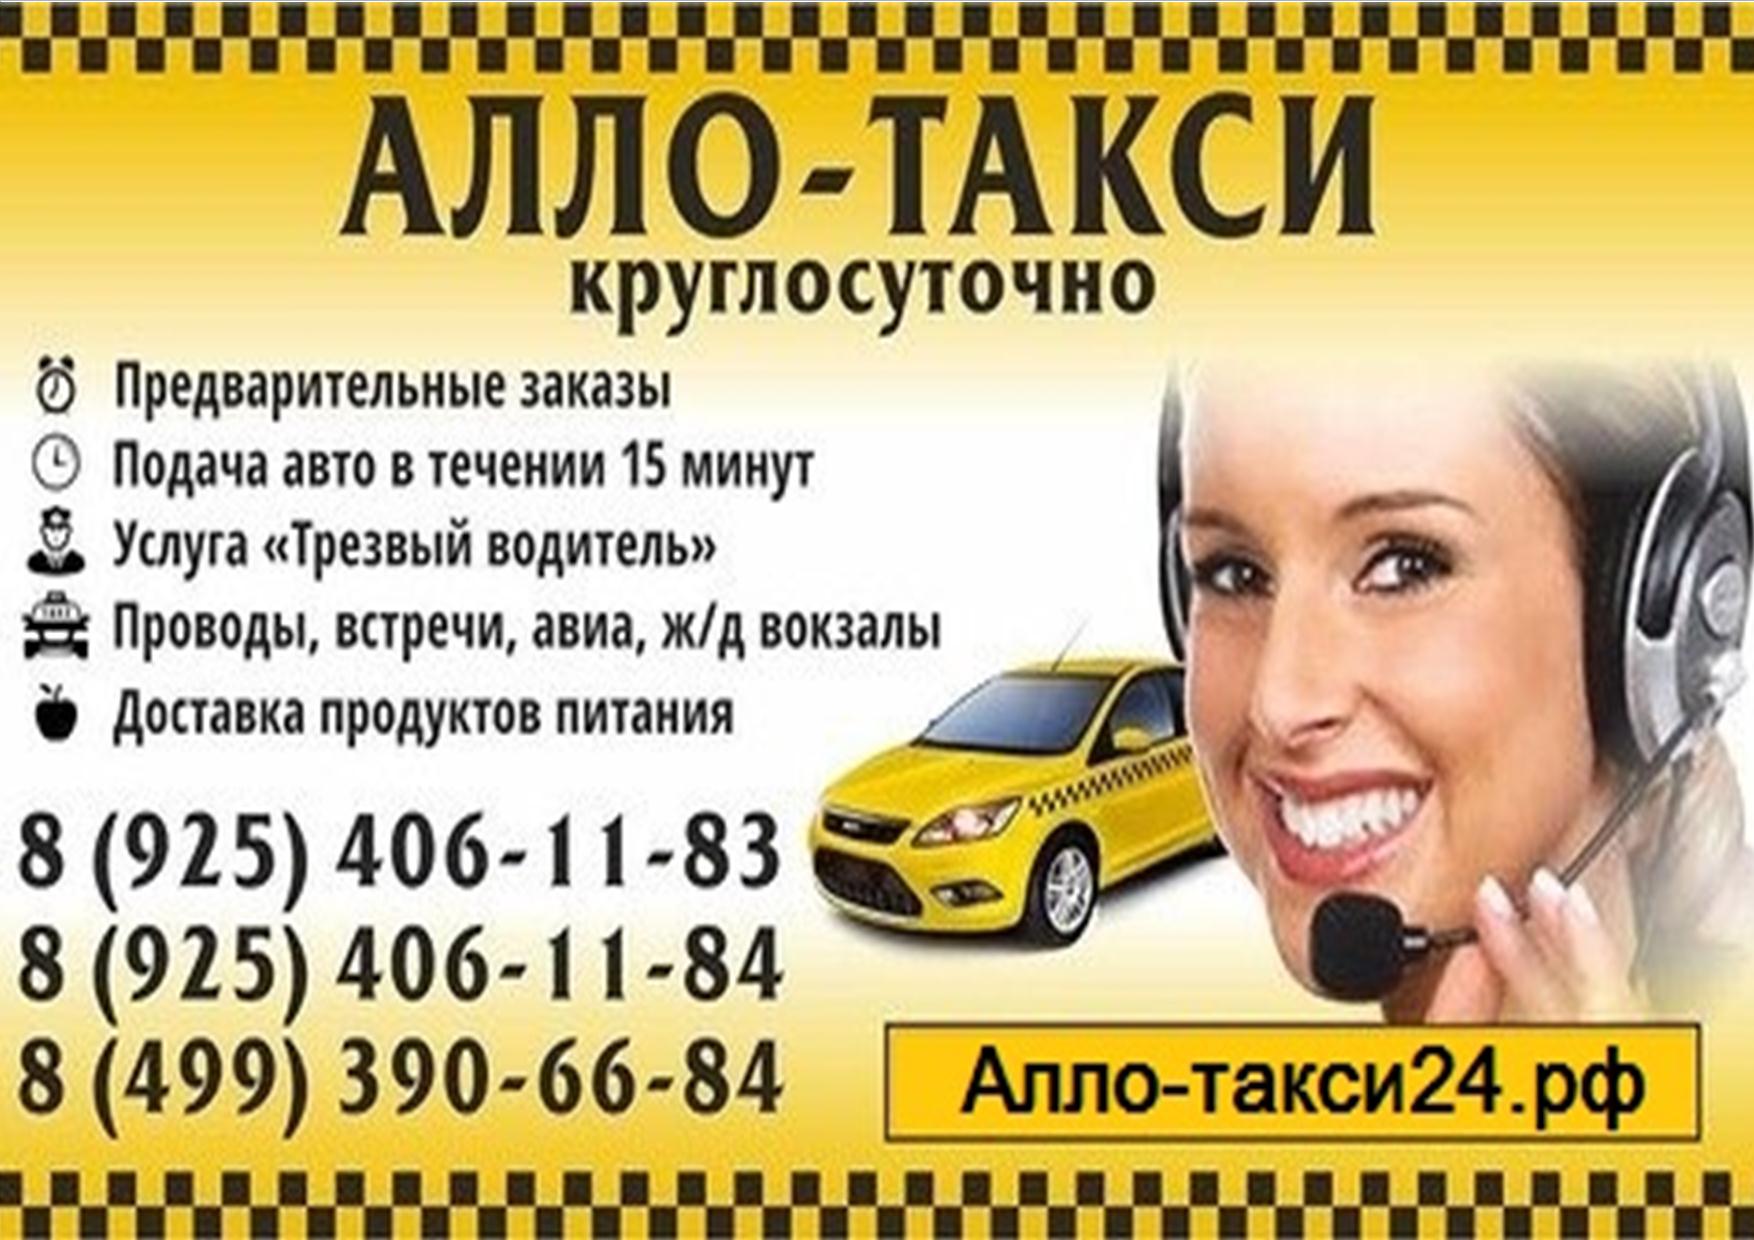 Номер службы такси москва. Реклама такси. Объявление такси. Визитка такси. Таксист реклама.